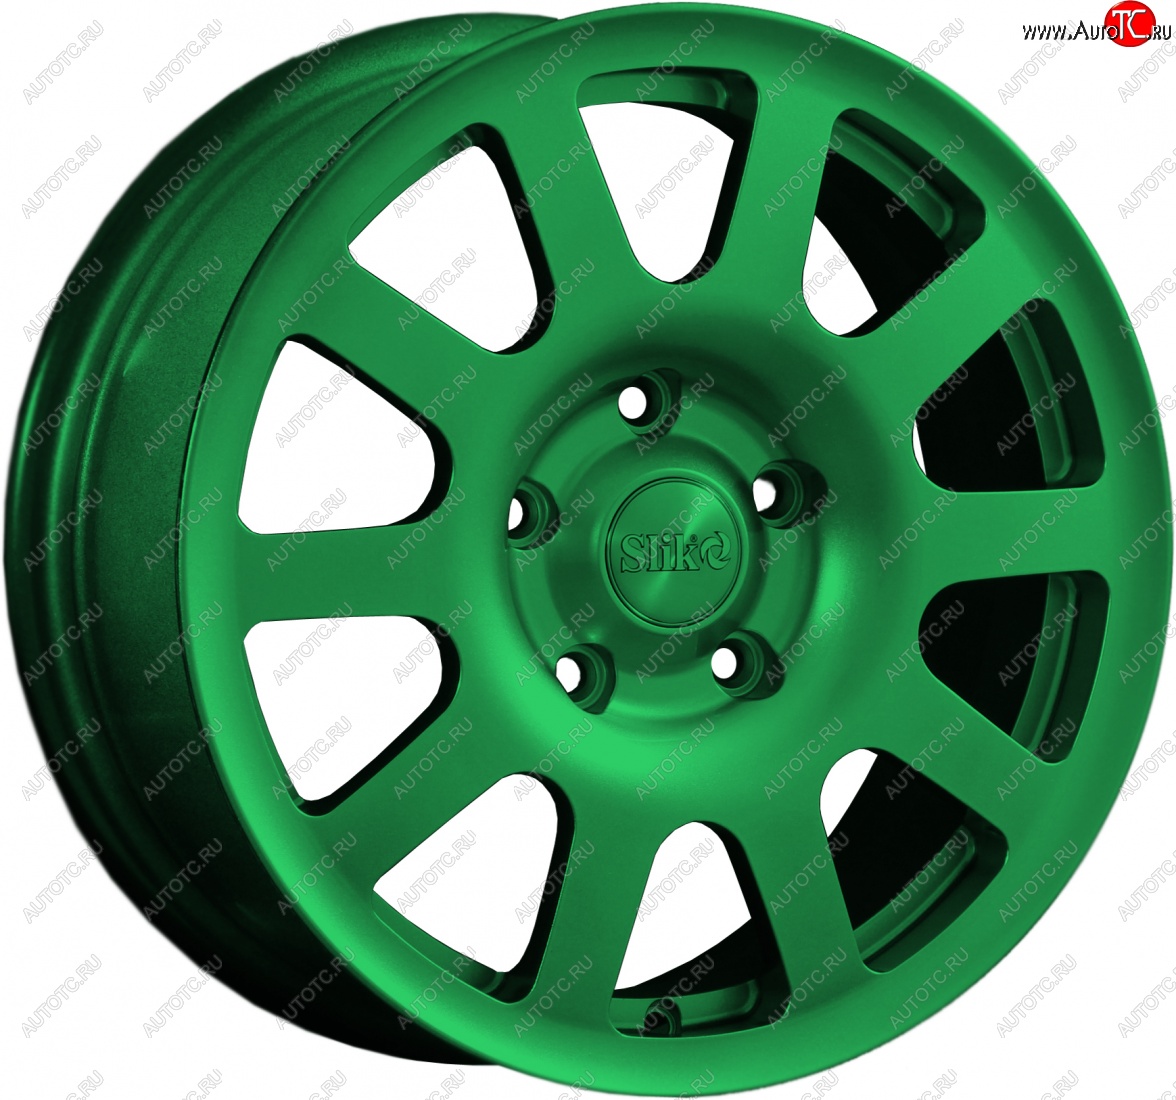 18 999 р. Кованый диск Slik Sport 6.5x16 (Зеленый) Toyota Voxy минивэн R90 дорестайлинг (2022-2024) 5x114.3xDIA60.1xET40.0 (Цвет: Зеленый)